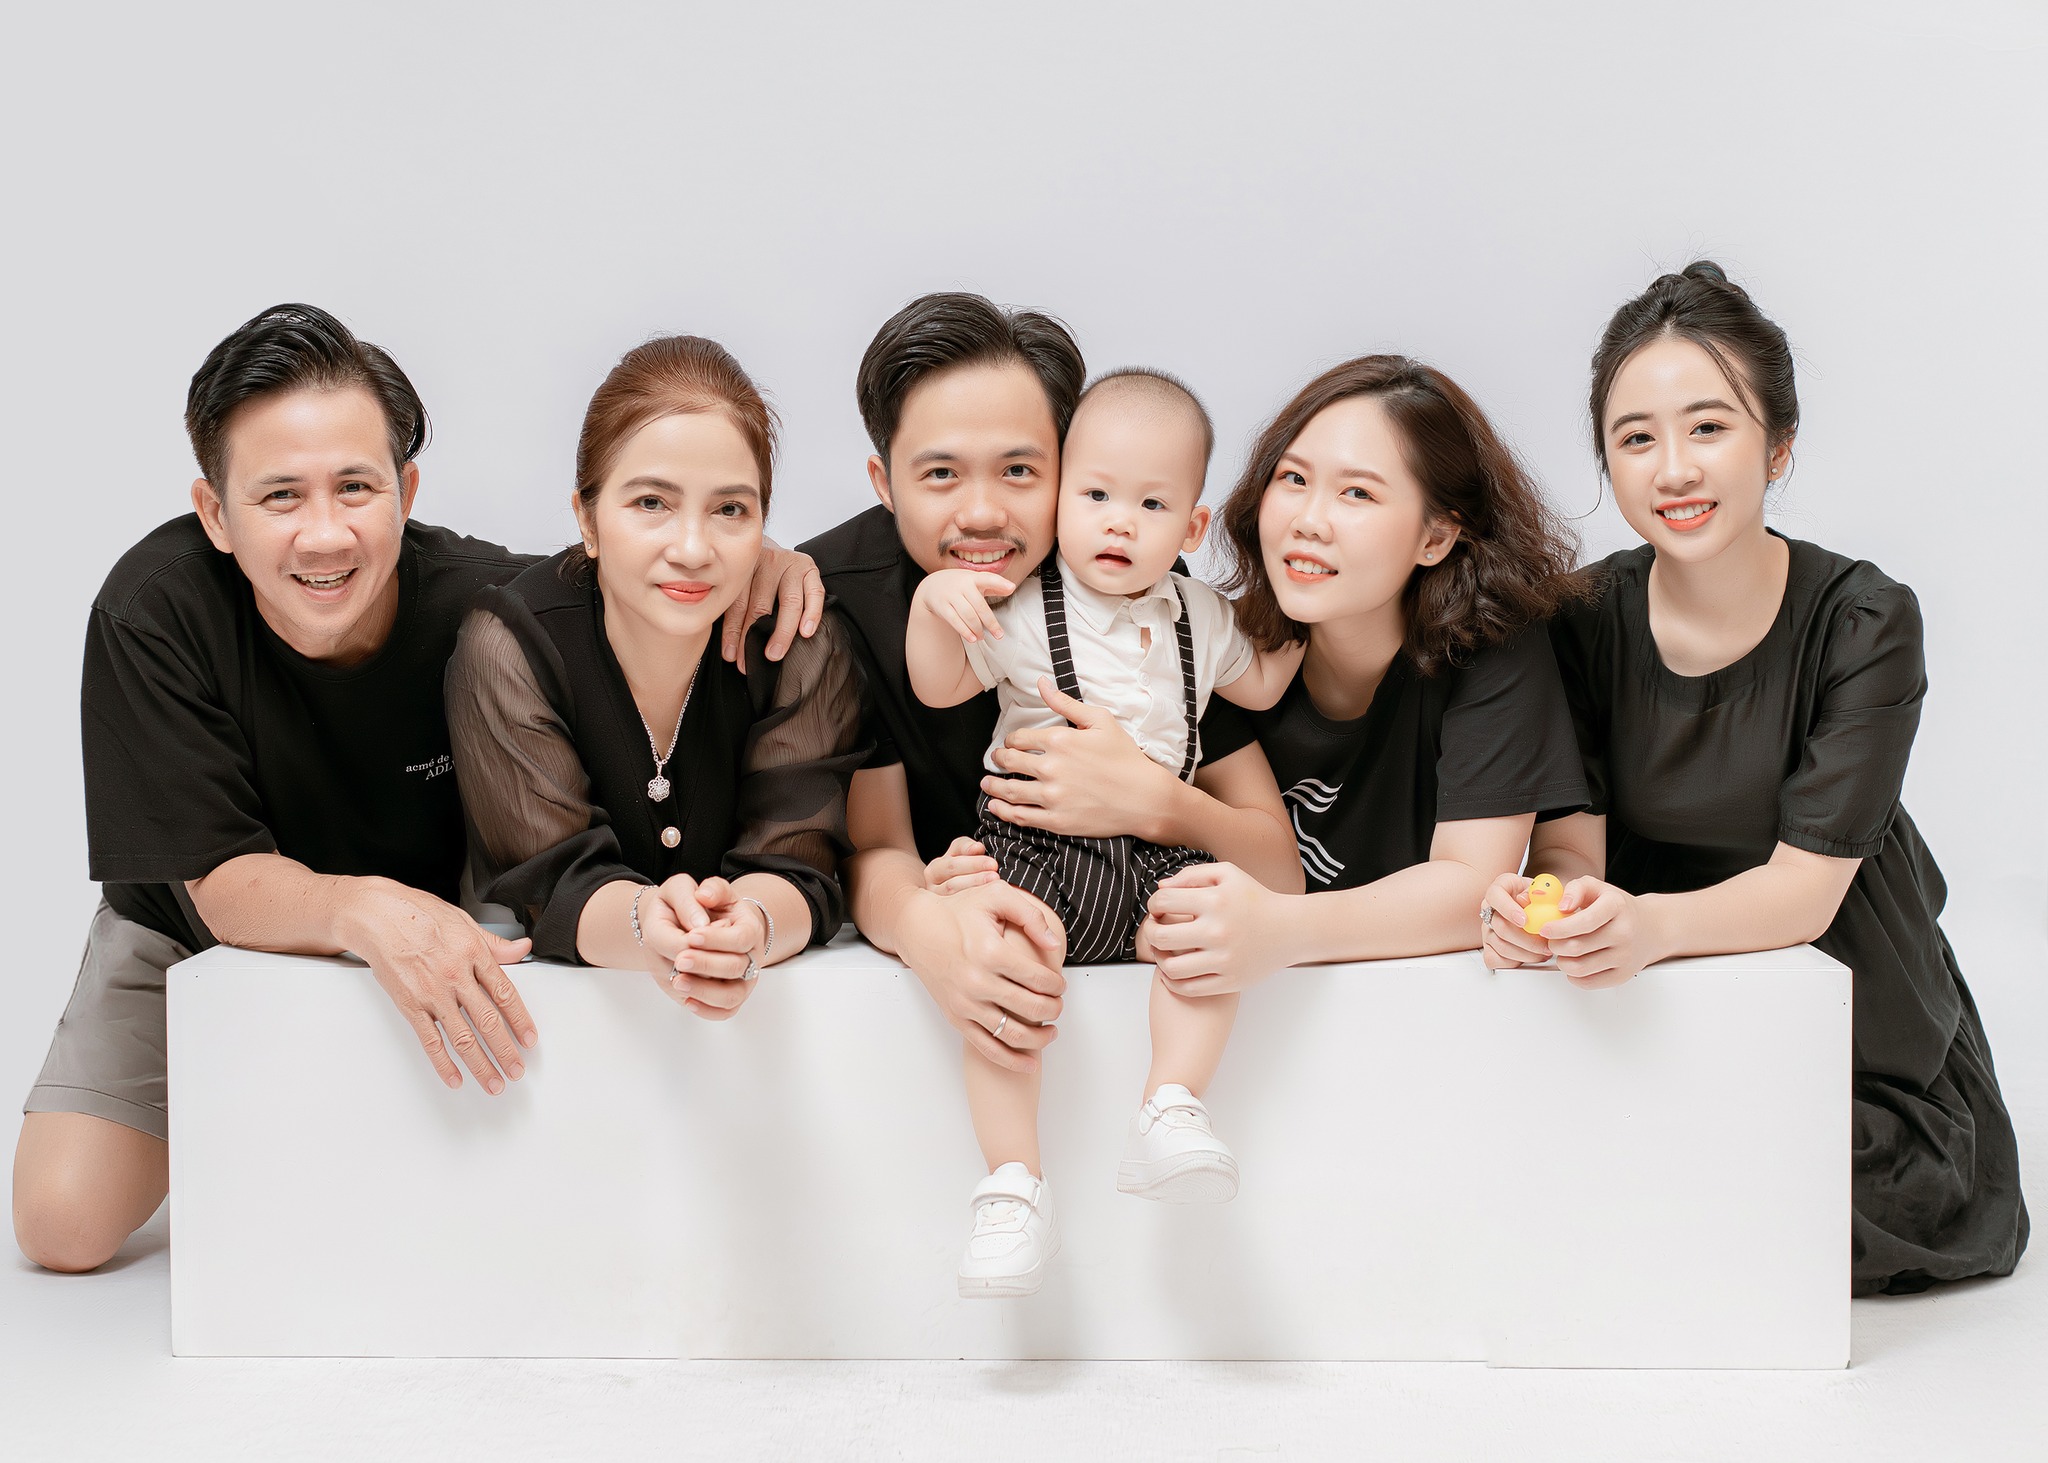 Chụp hình gia đình bài bản và chuyên nghiệp ở Đà Nẵng